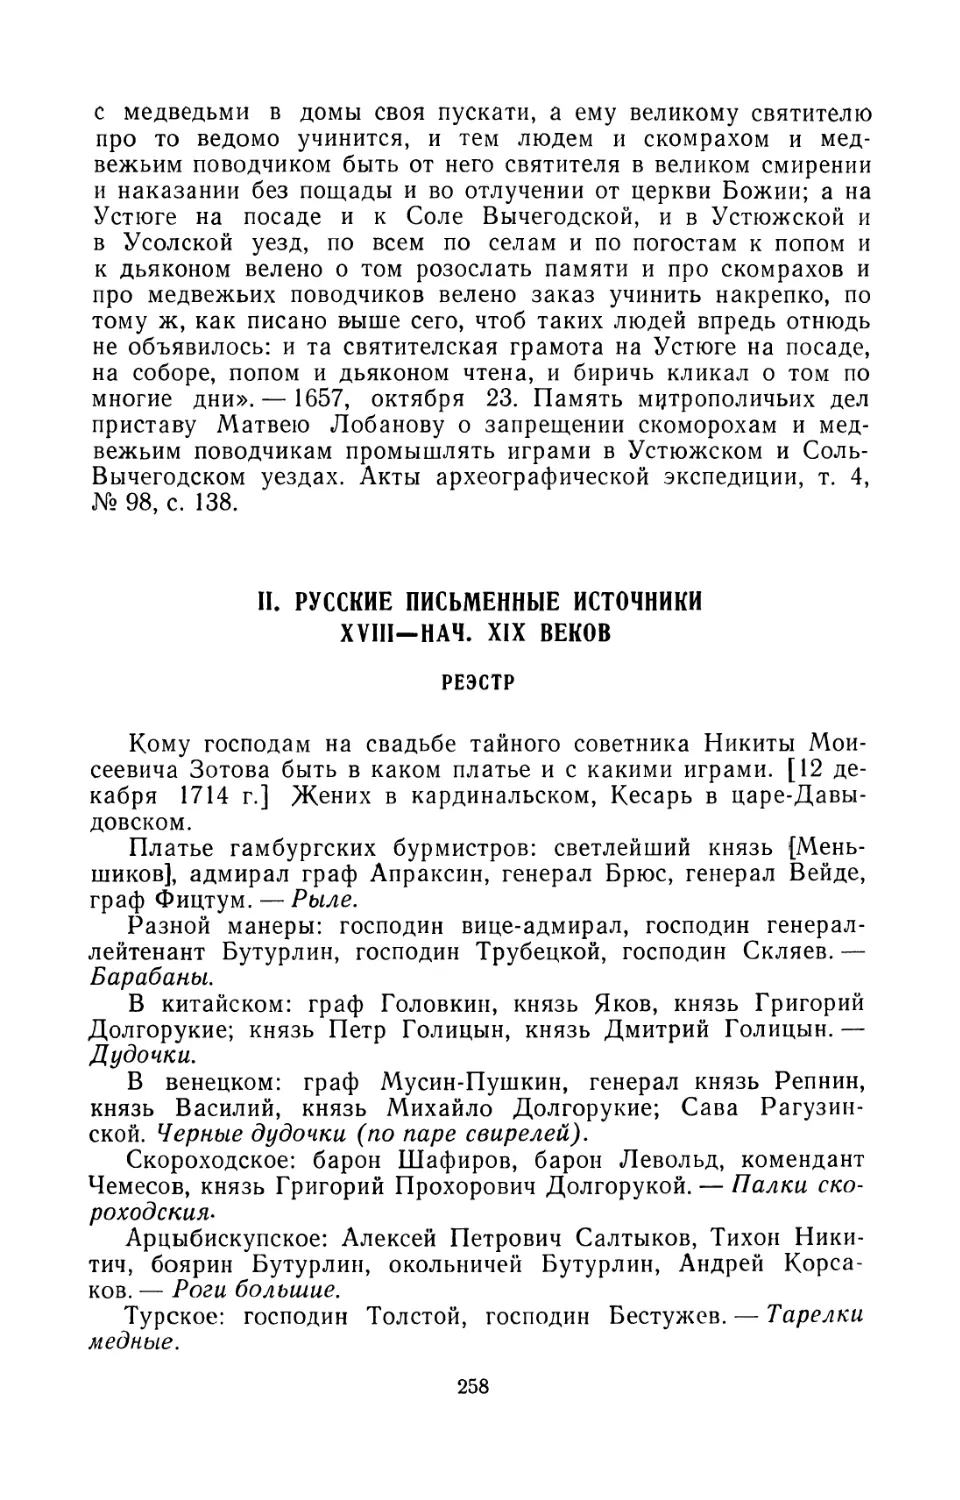 II. Русские письменные источники XVIII — начала XIX века